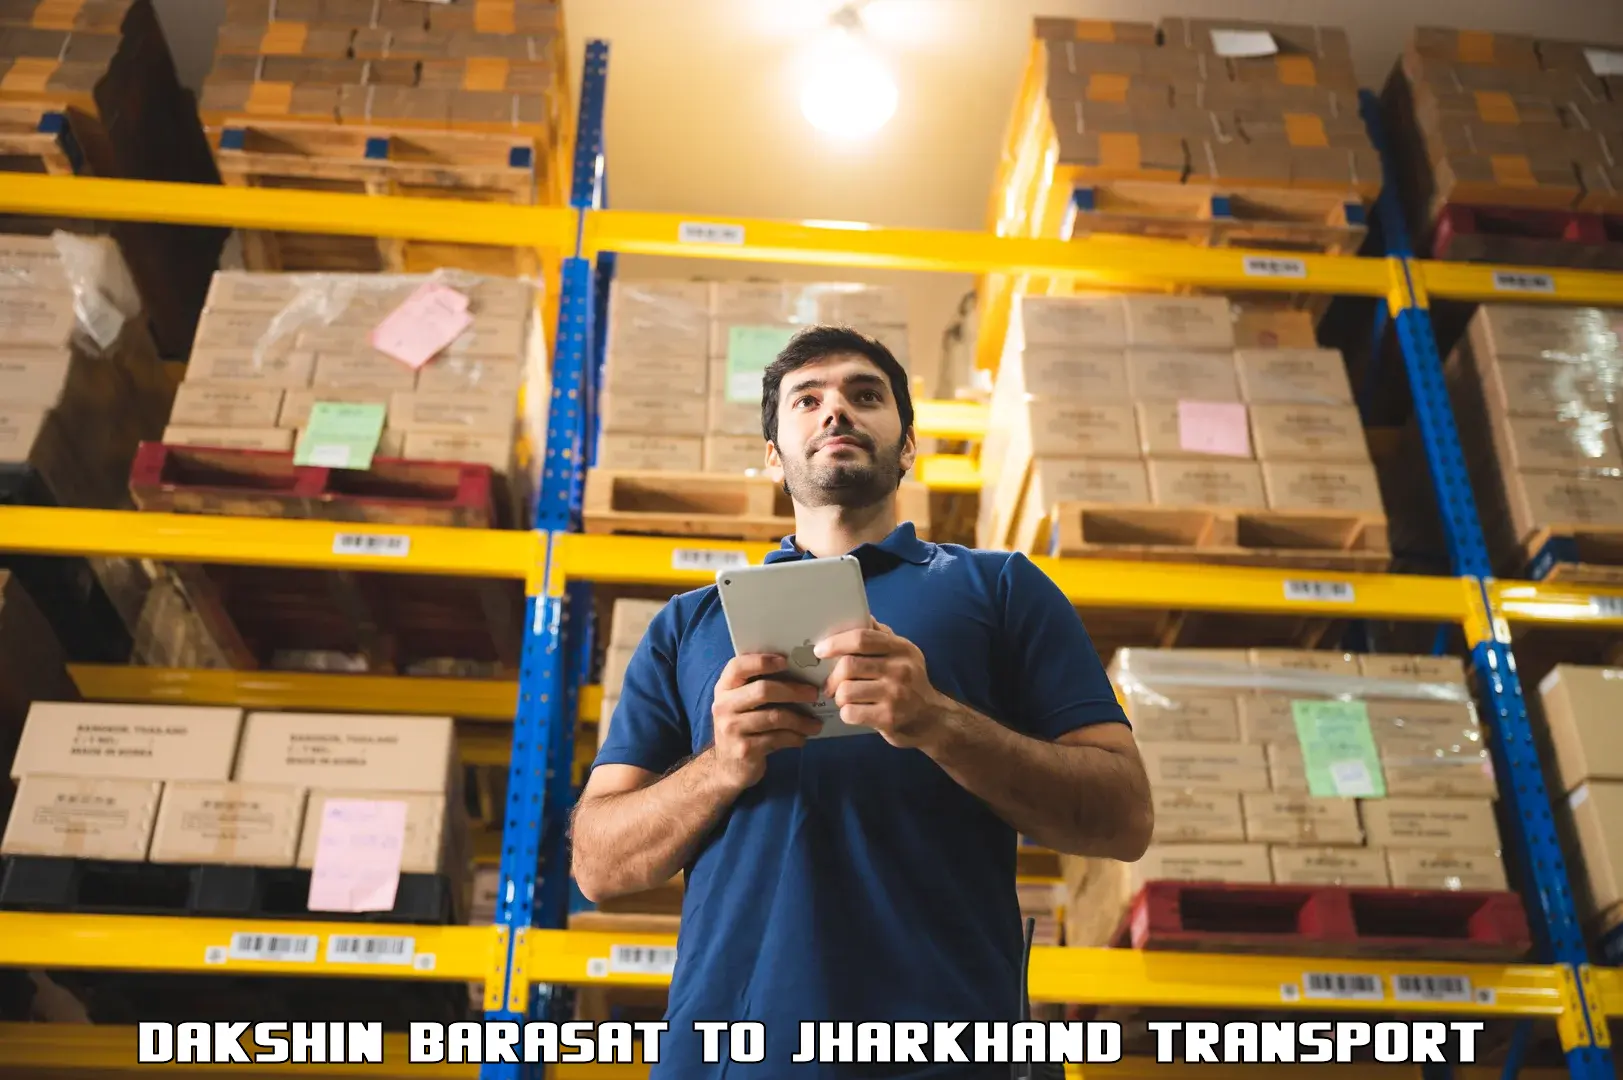 Shipping partner Dakshin Barasat to Ghatshila